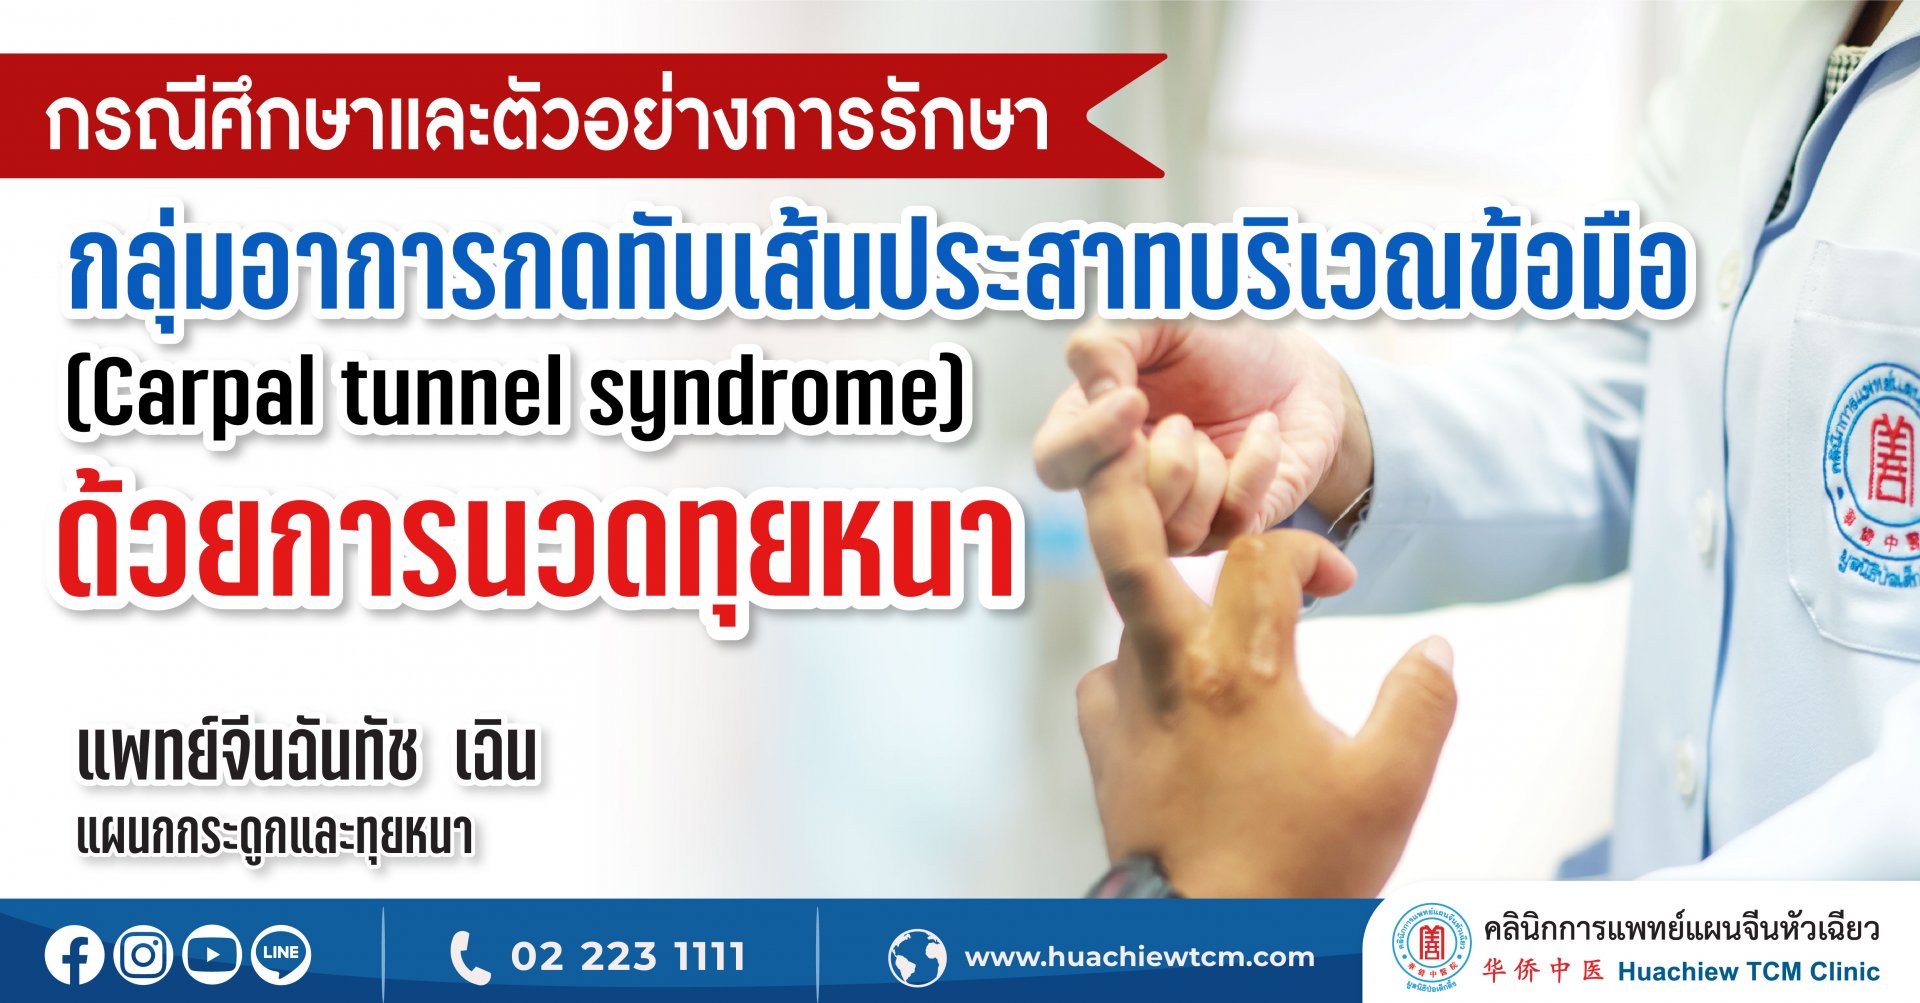 กรณีศึกษาและตัวอย่างการรักษา กลุ่มอาการกดทับเส้นประสาทบริเวณข้อมือ (Carpal tunnel syndrome) ด้วยการนวดทุยหนา